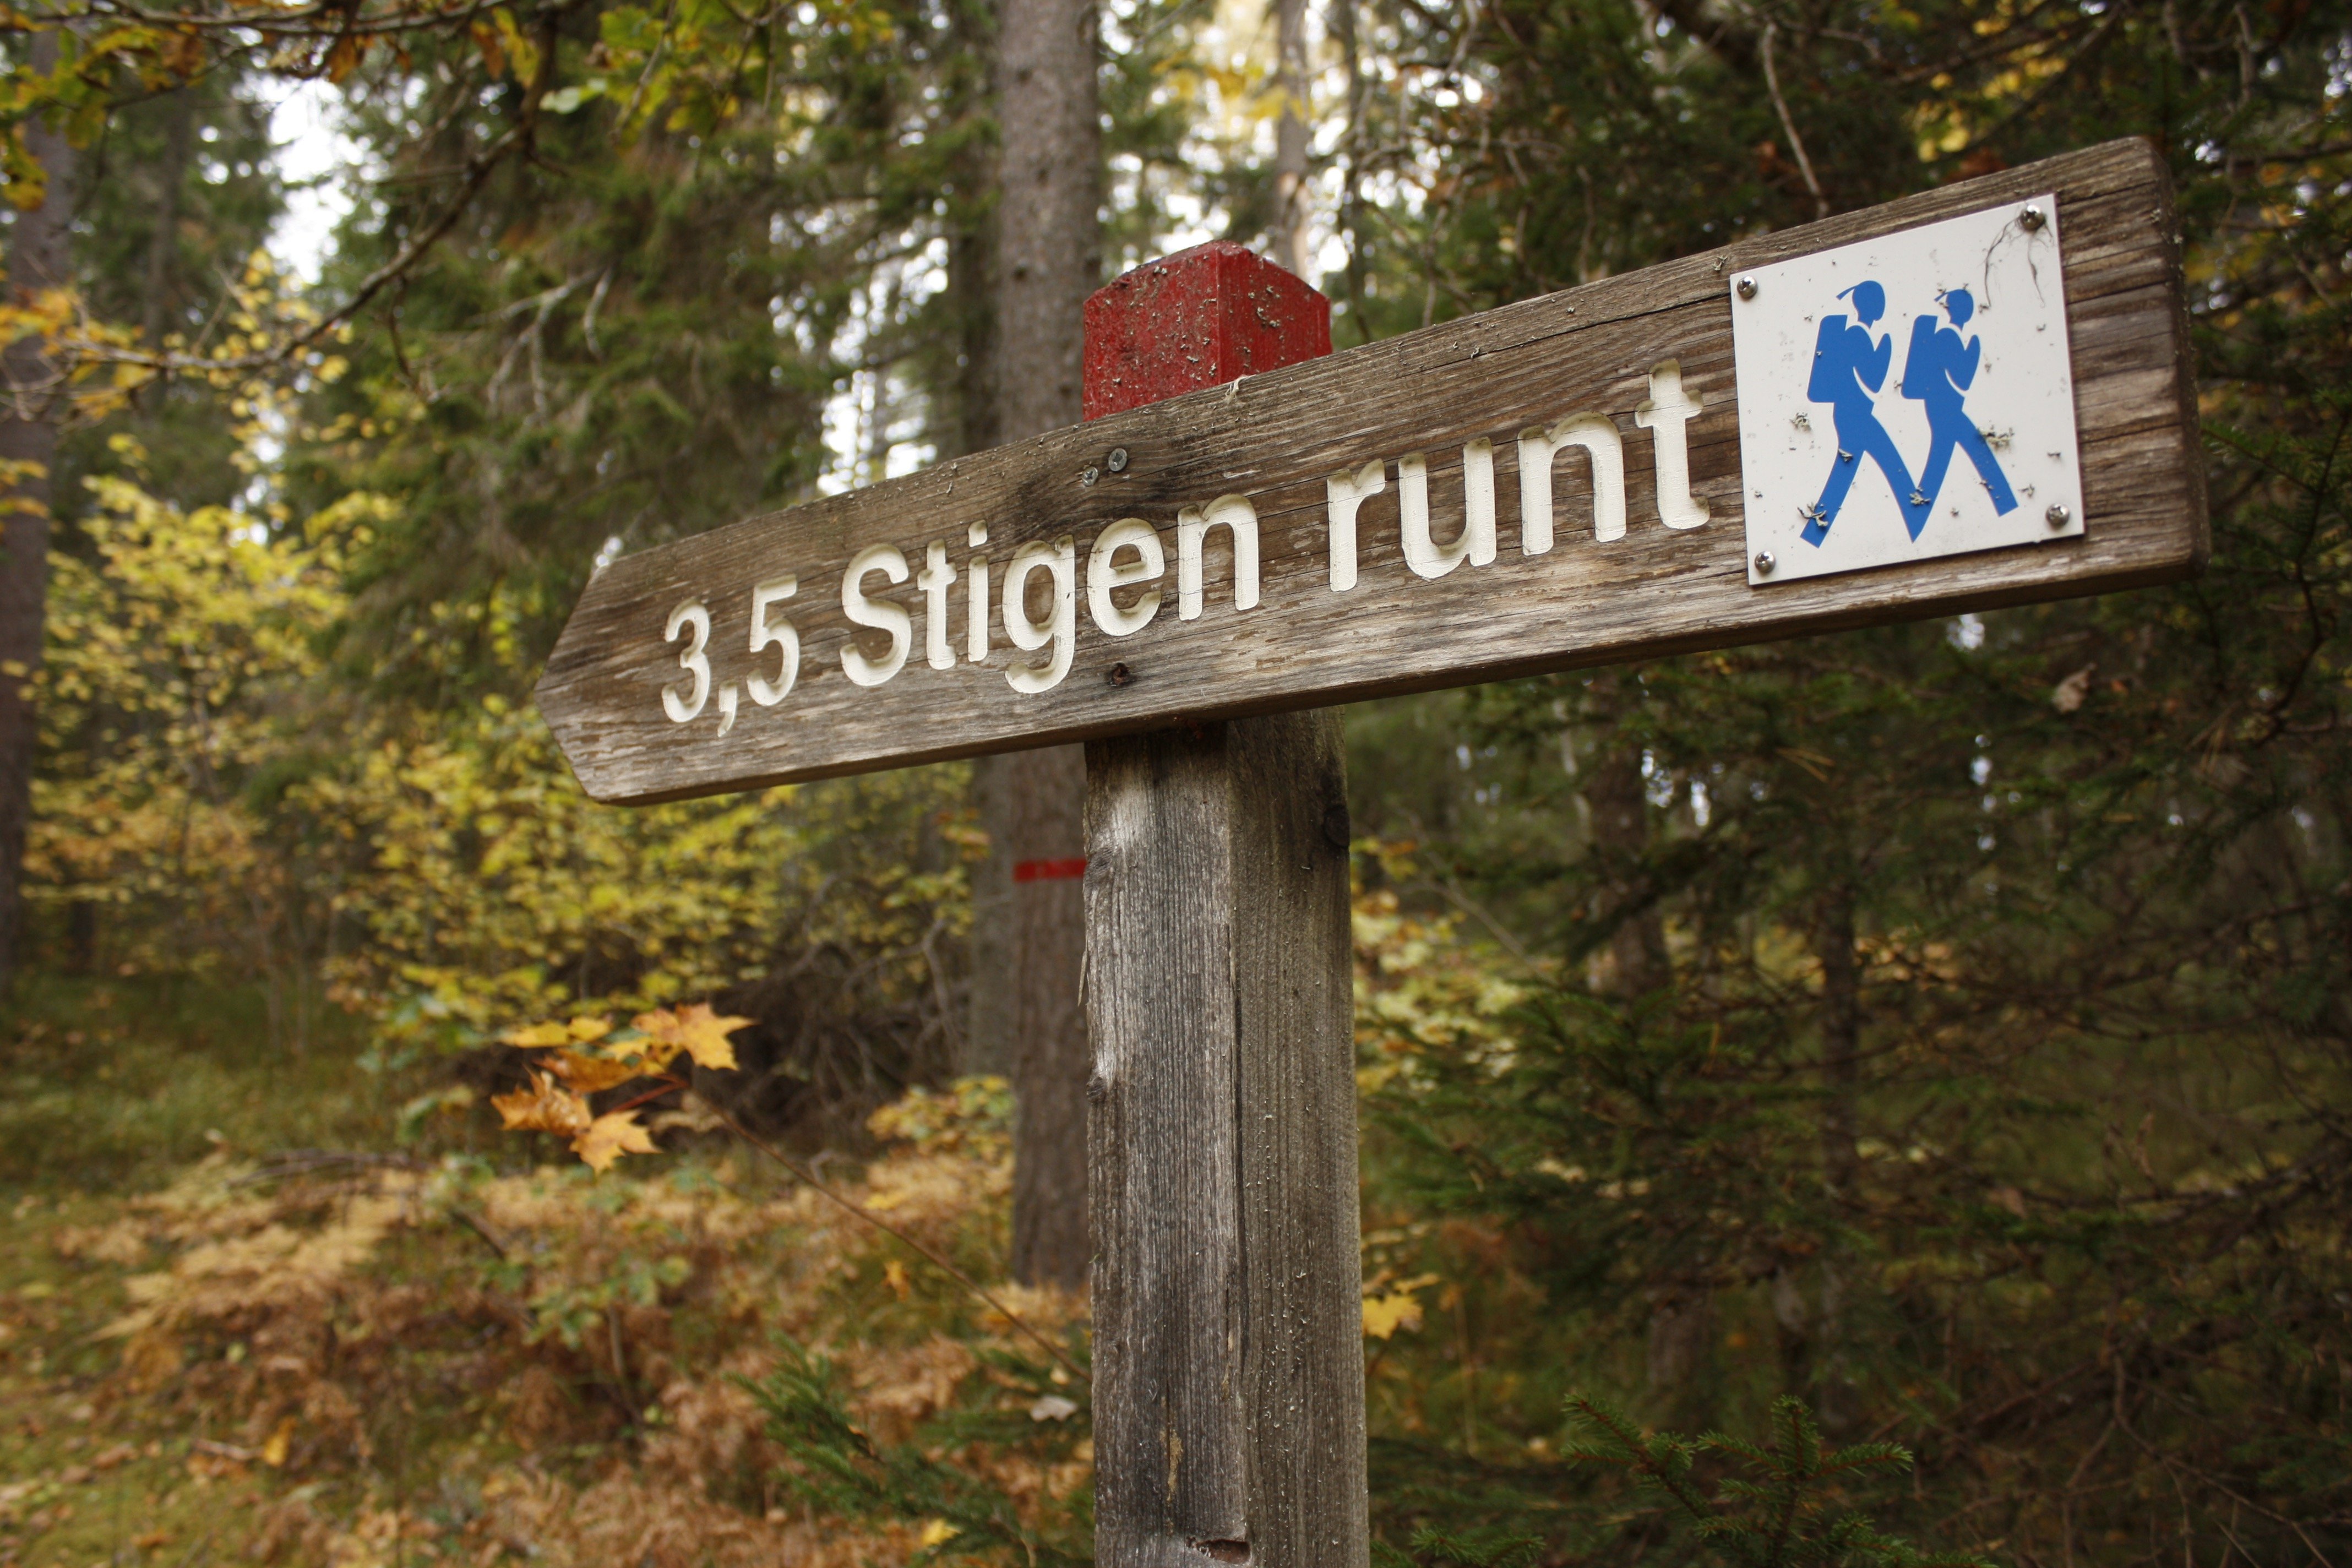 Närbild på en vägvisare i skogen som pekar åt vänster. På vägvisaren står det "Stigen runt" 3.5 kilometer